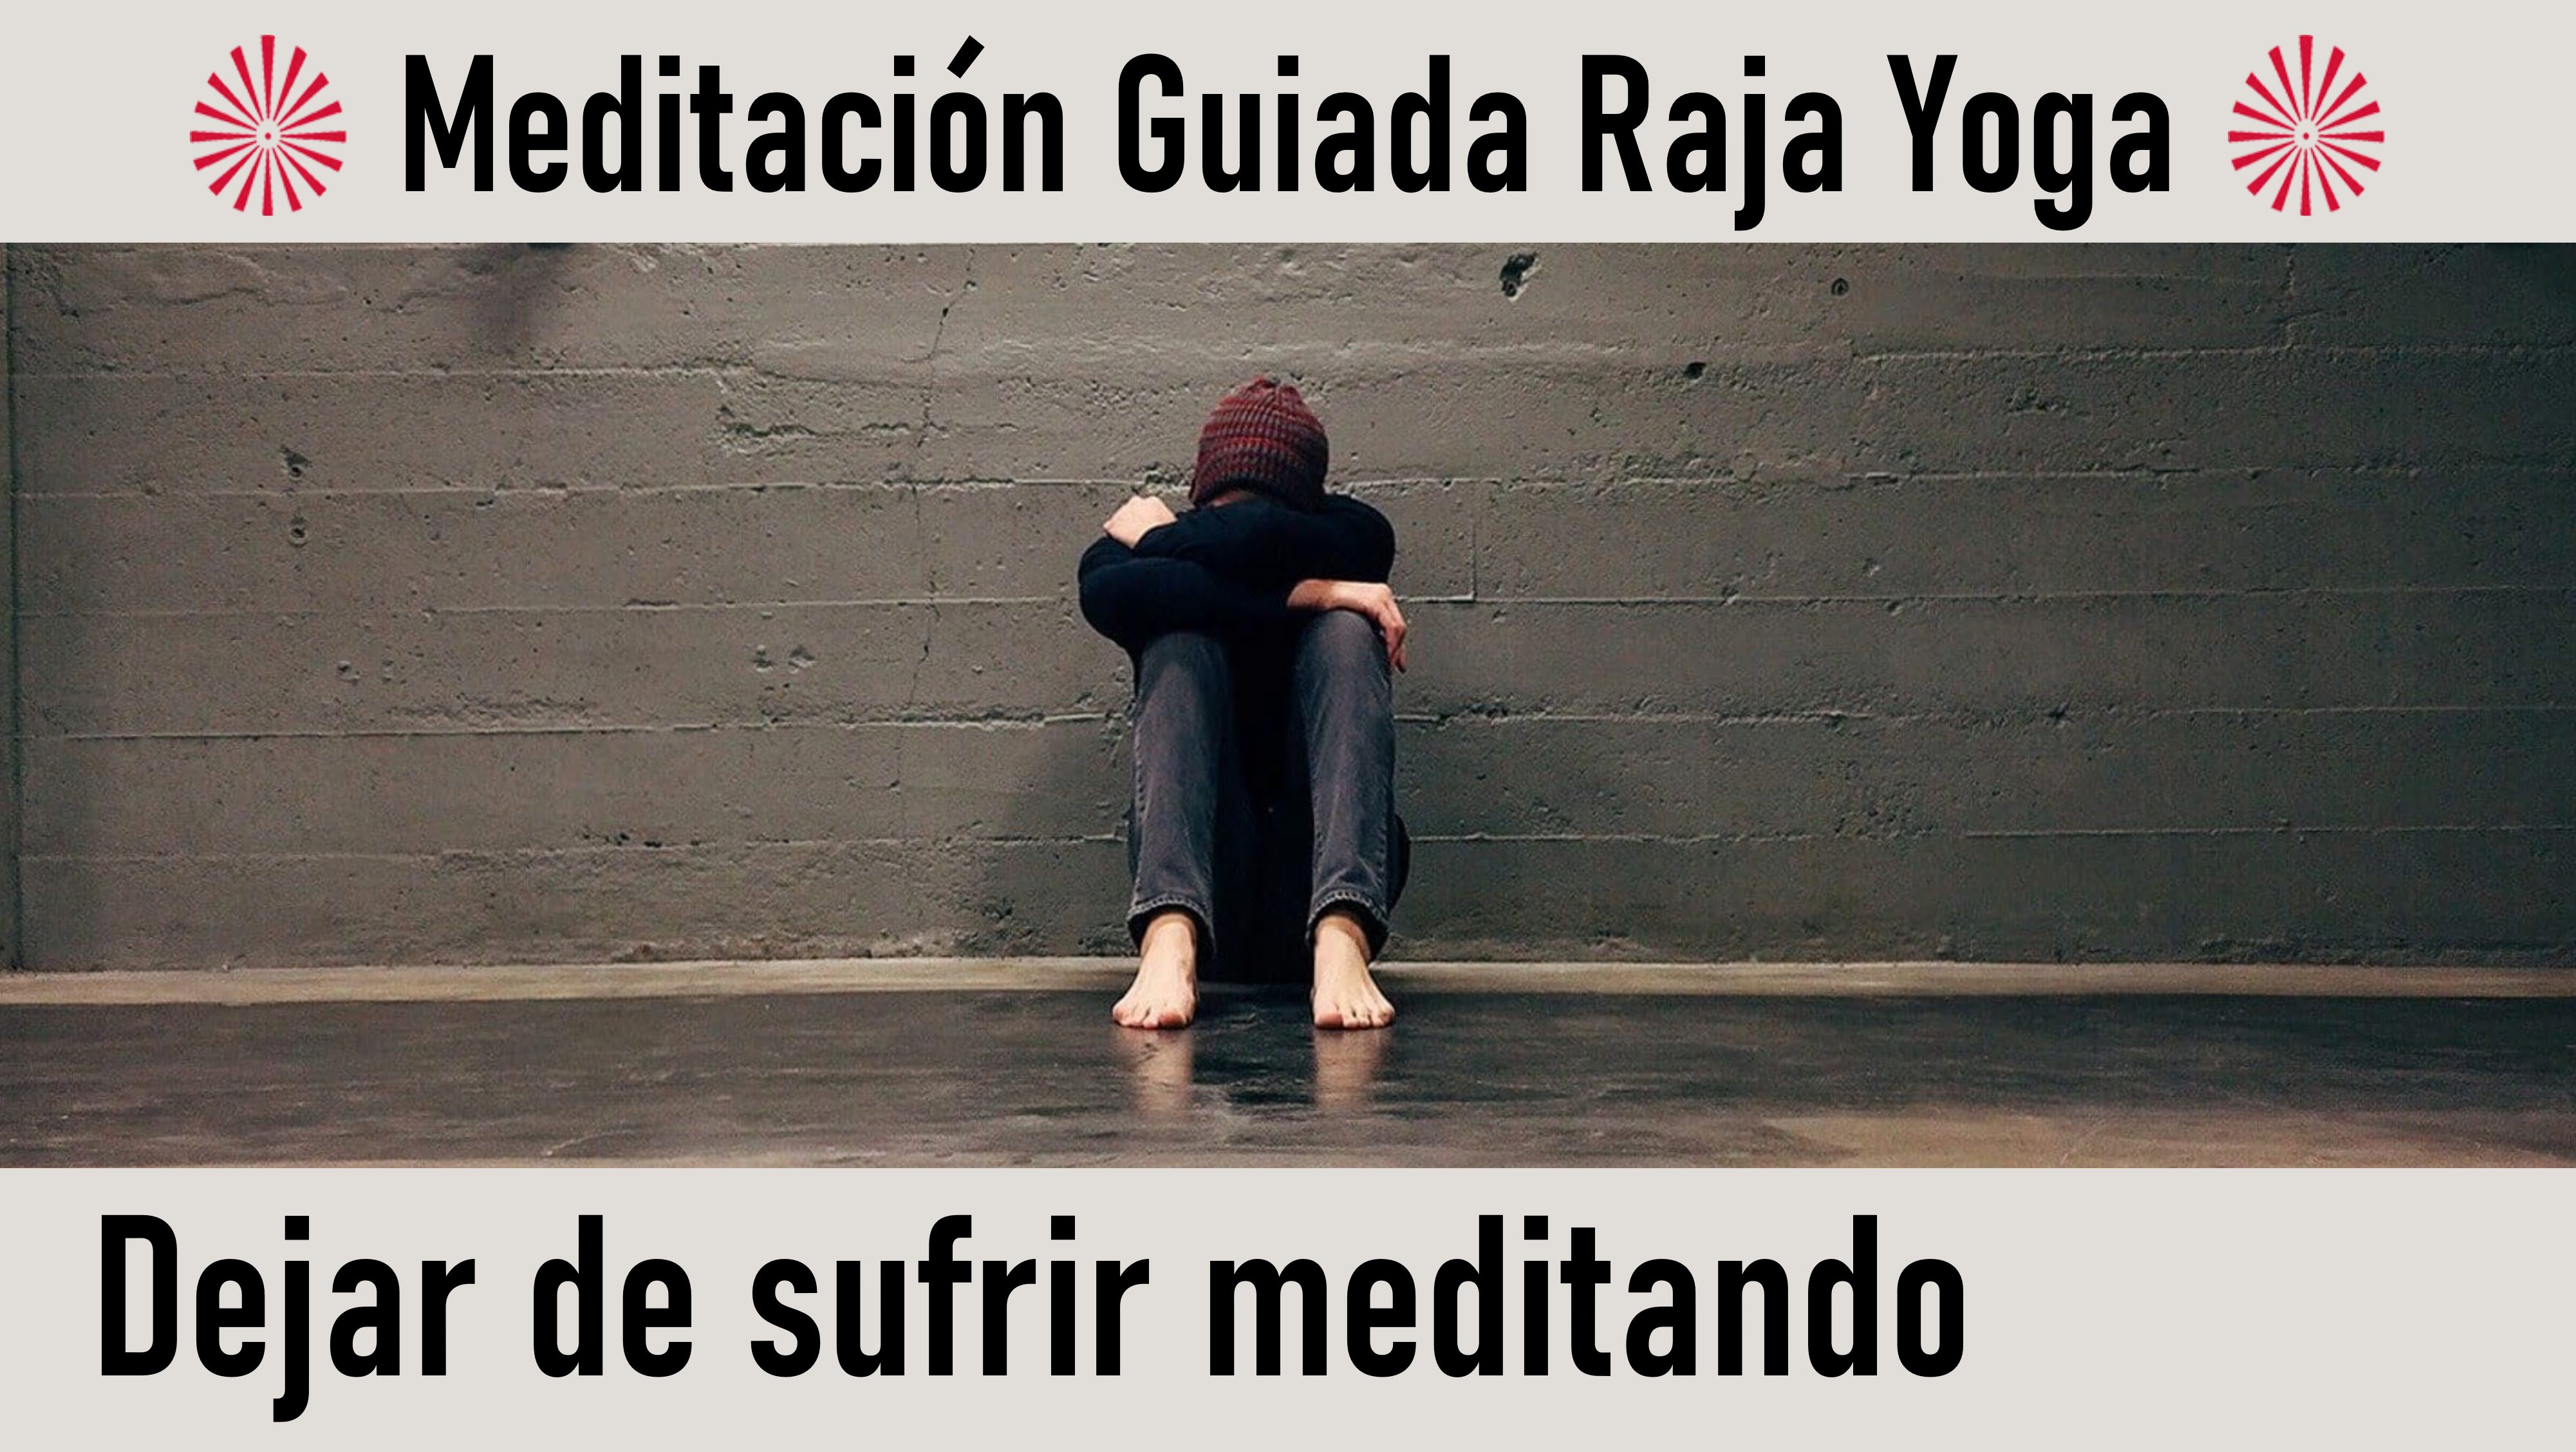 Meditación Raja Yoga: Dejar de Sufrir Meditando (27 Mayo 2020) On-line desde Sevilla